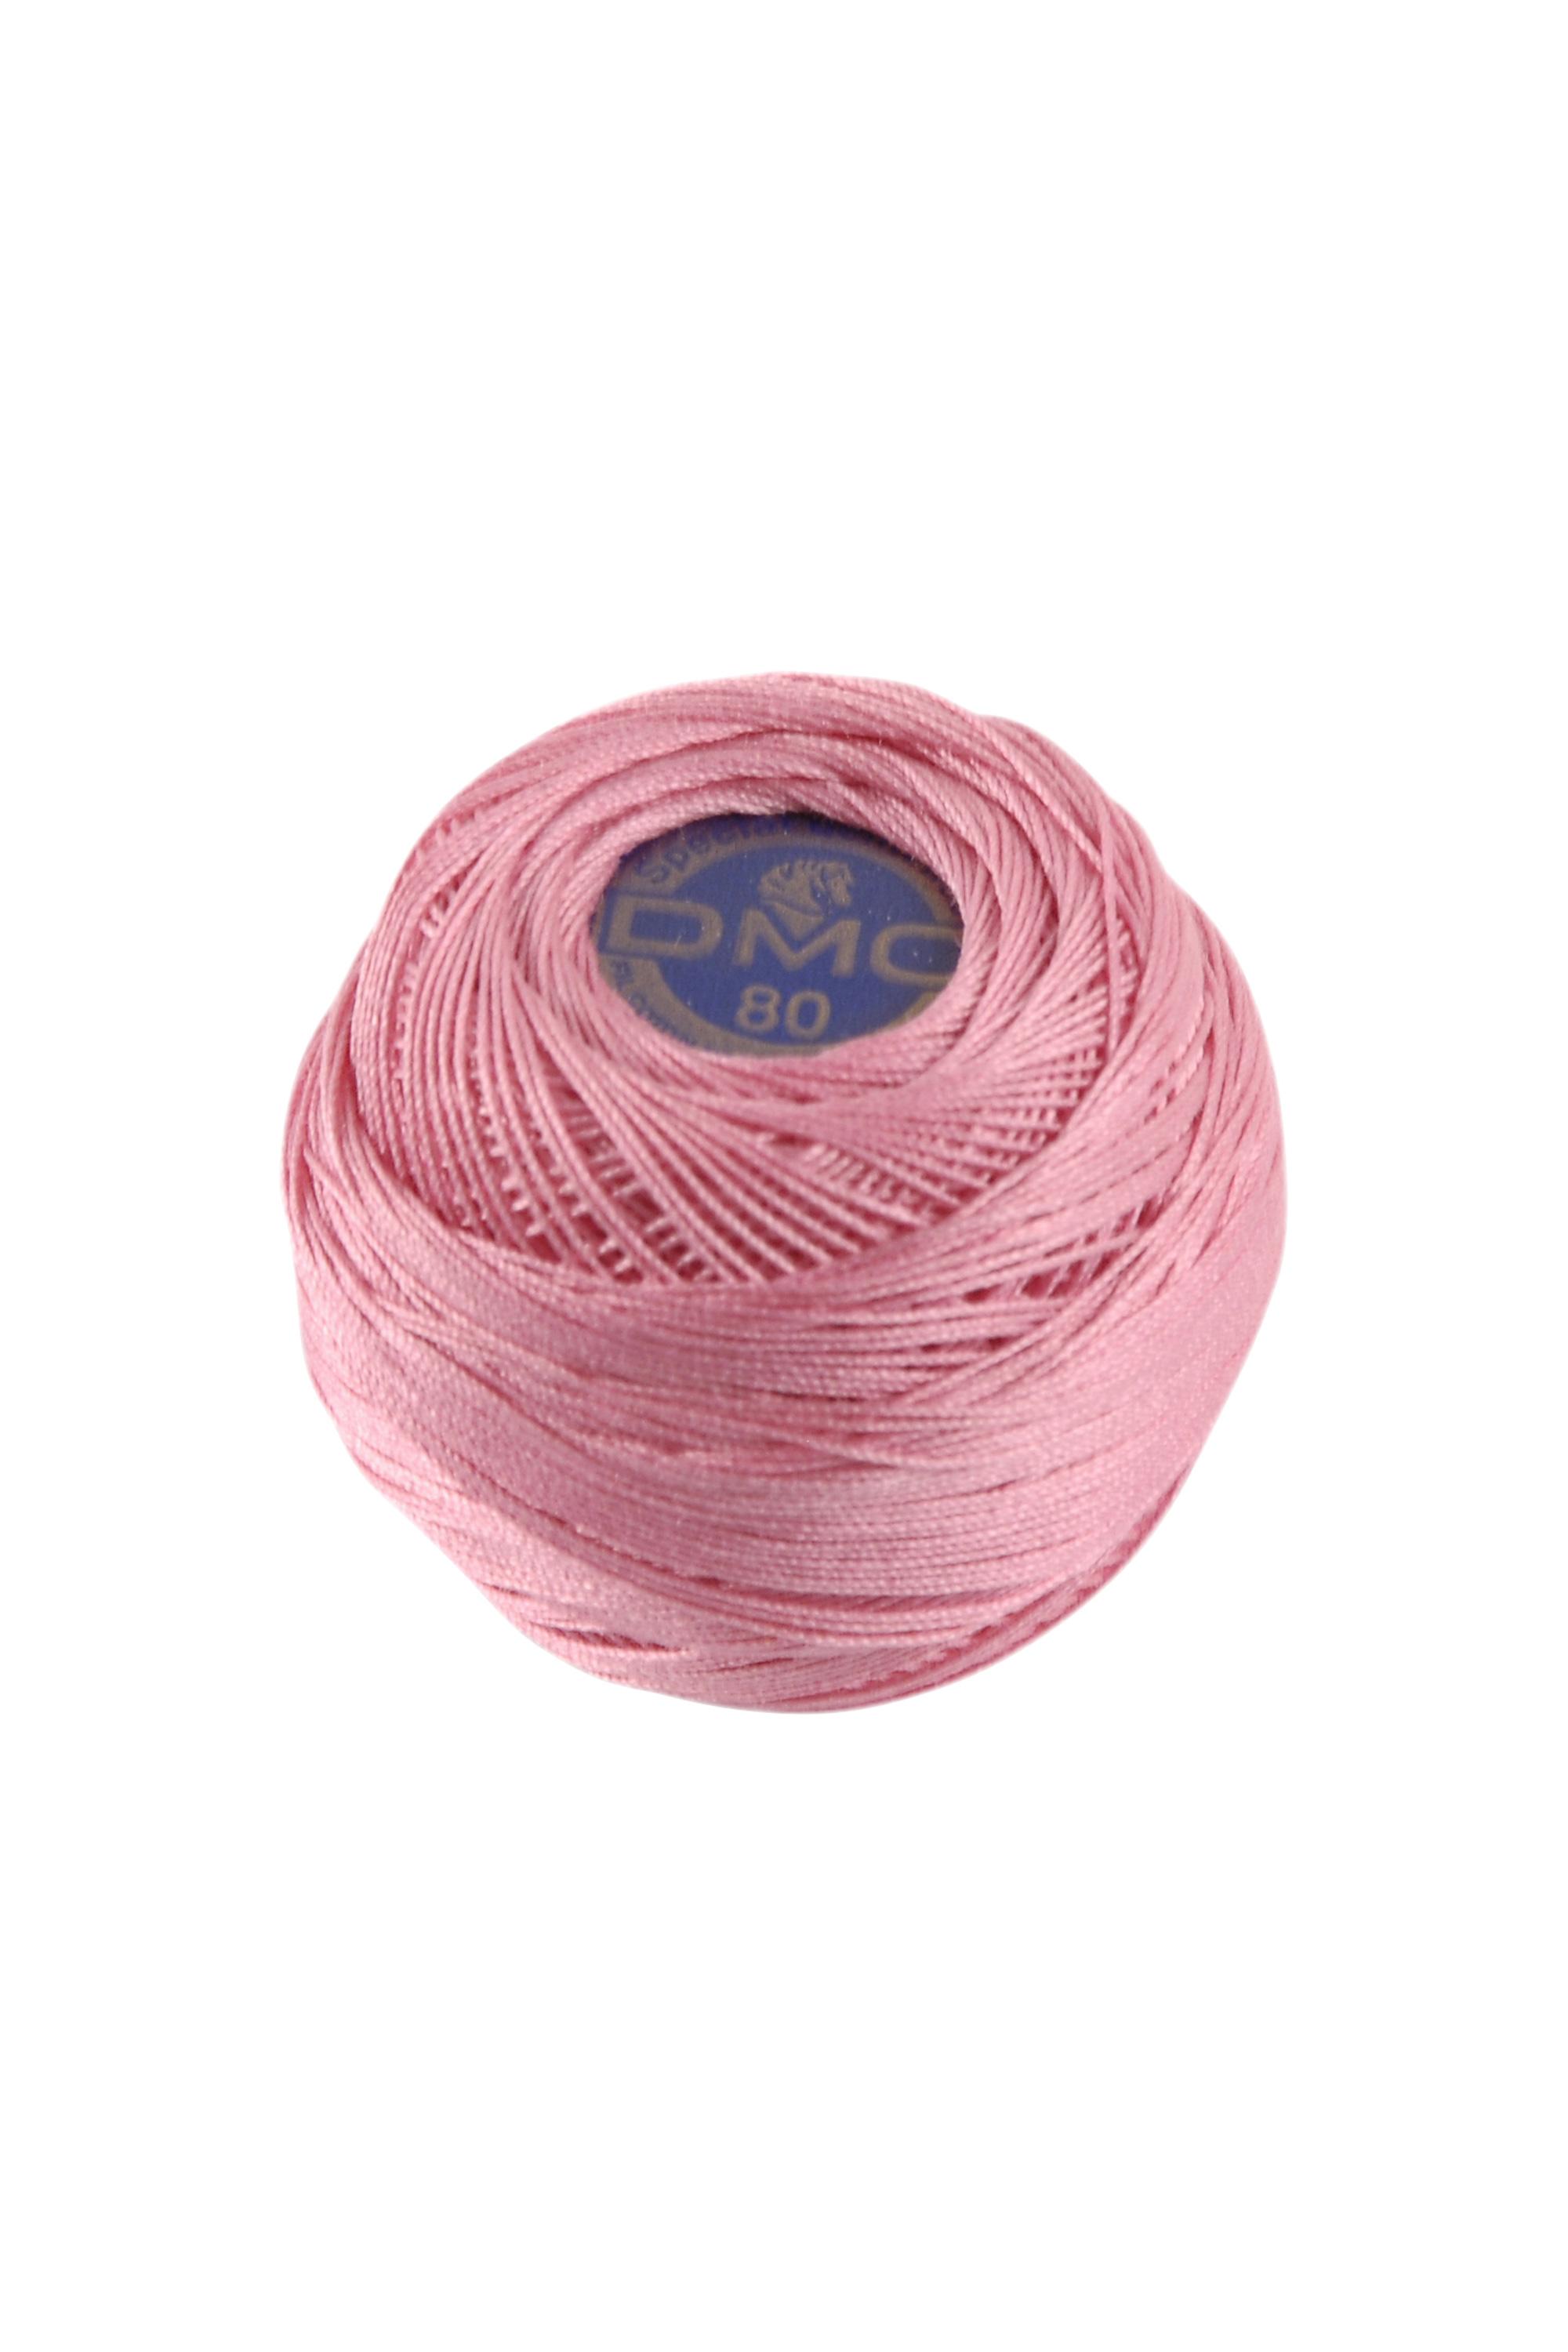 Fil dentelle en coton n ° 20 pour crochet, 6 brins, 260 mètres.